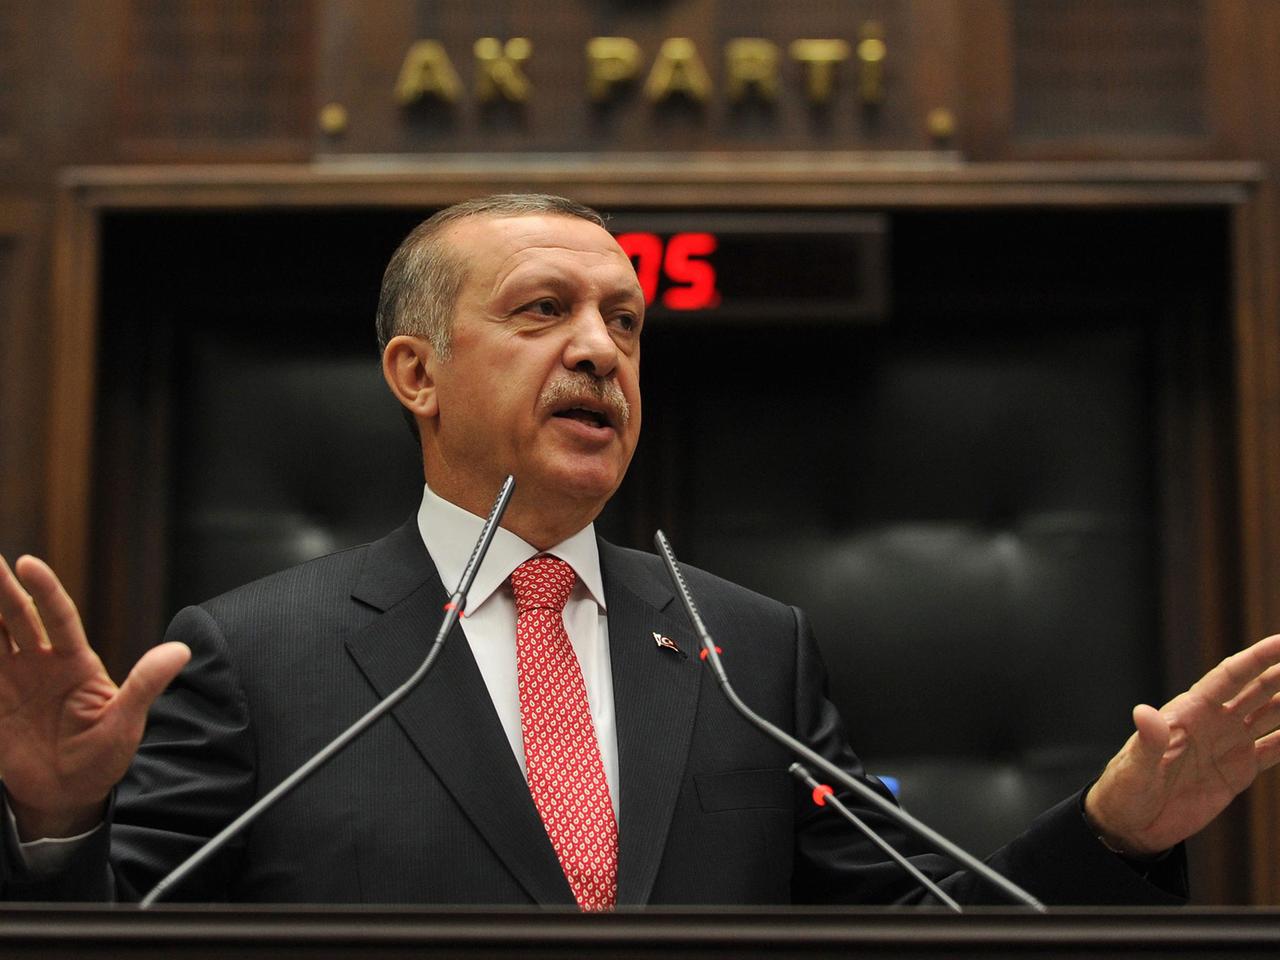 Der türkische Ministerpräsident Recep Tayyip Erdogan: "Twitter und solche Sachen werden wir mit der Wurzel ausreißen"